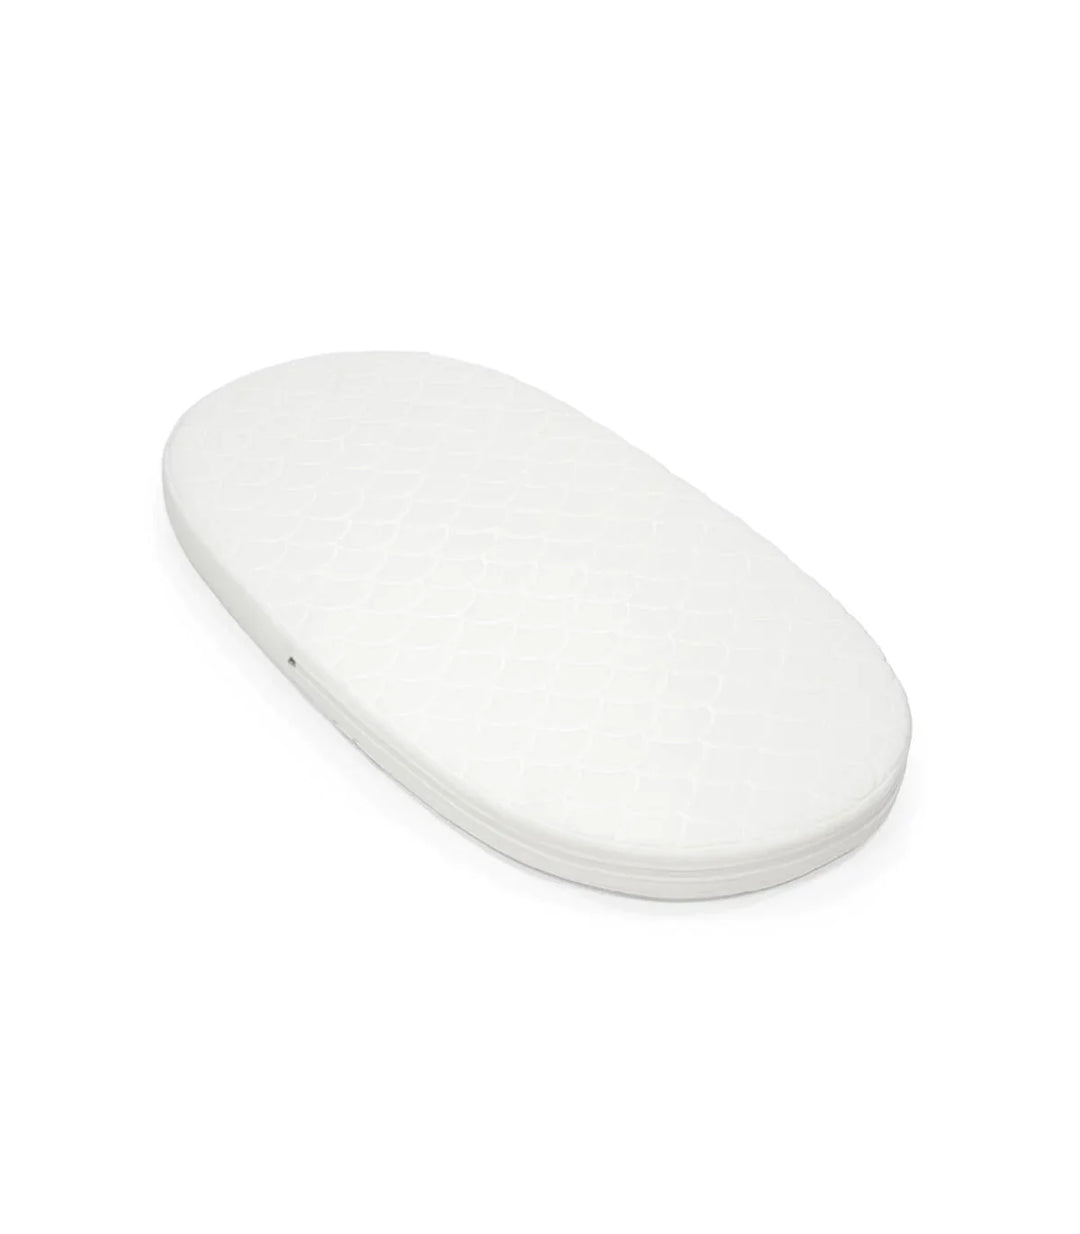 Stokke Sleepi V3 Matras in wit, ademend en veilig, perfect passend in het Stokke Sleepi bed, met wasbare hoes en kern.